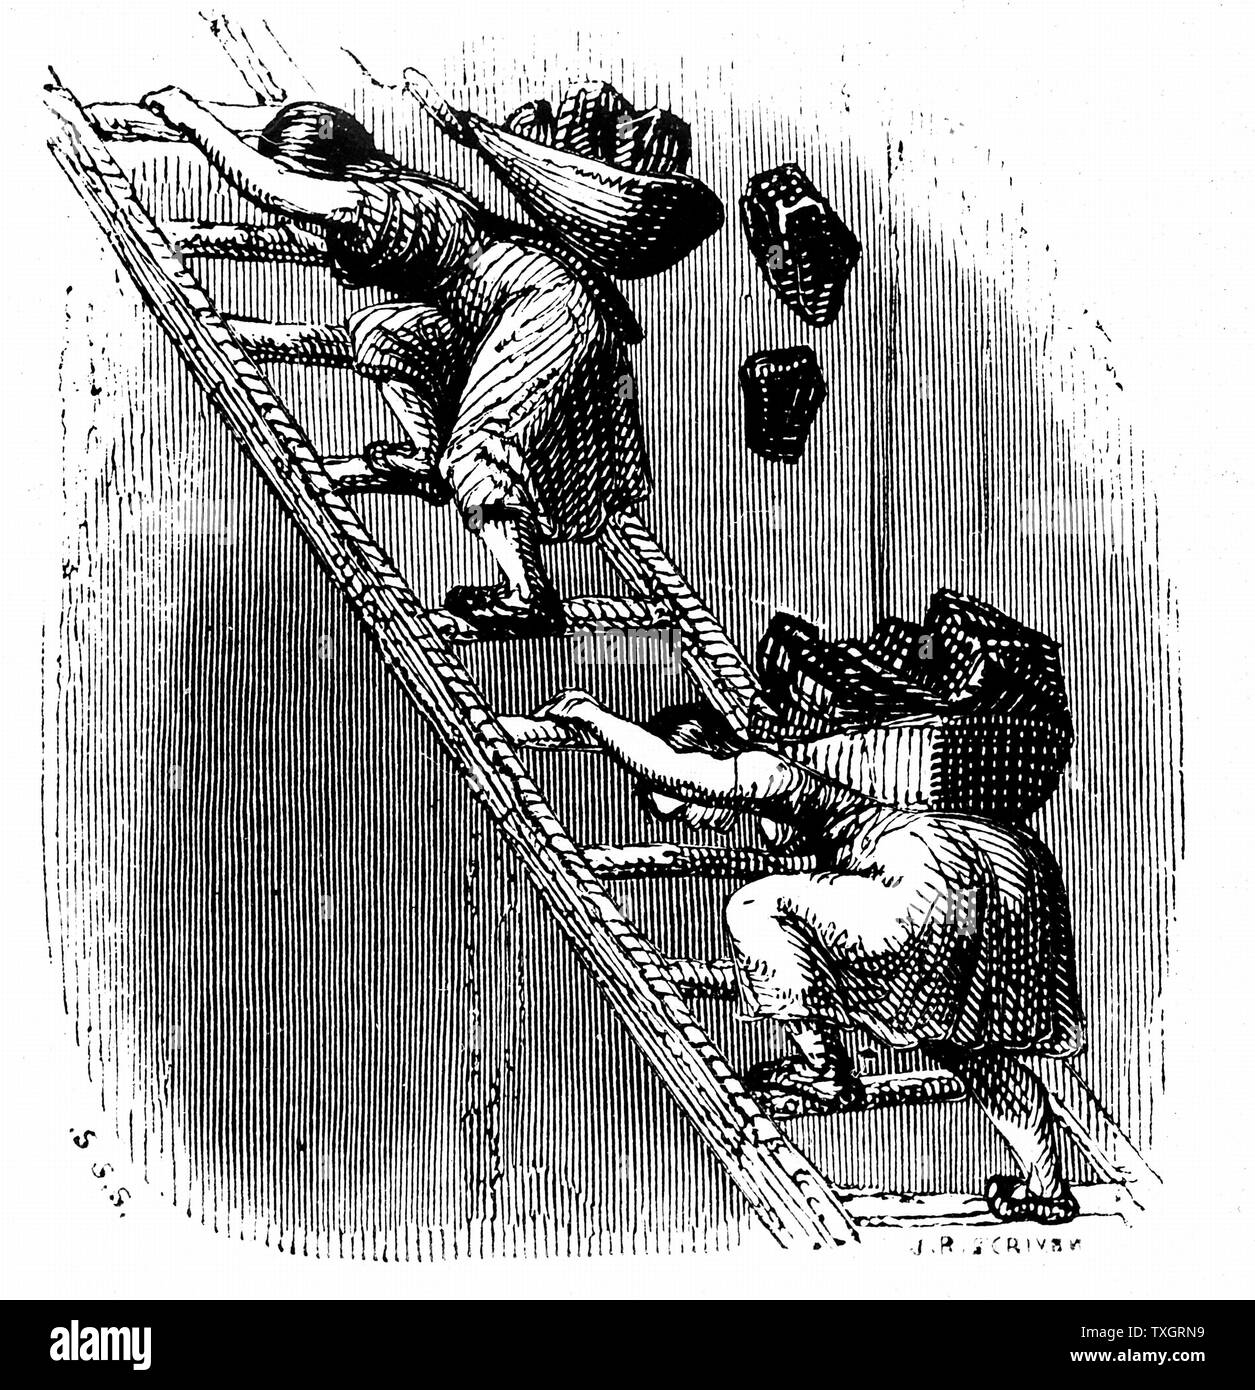 Weibliche Arbeitnehmer Kohle schleppen an der Oberfläche eine Leiter hinauf. Die Frau hat ihre Last und die Frau ist in Gefahr, verletzt zu kaufen, Kohle verloren und von der Leiter und Absturz in die Grube unten. c 1844 Holzschnitt von britischen Bergbau Bedingungen Stockfoto